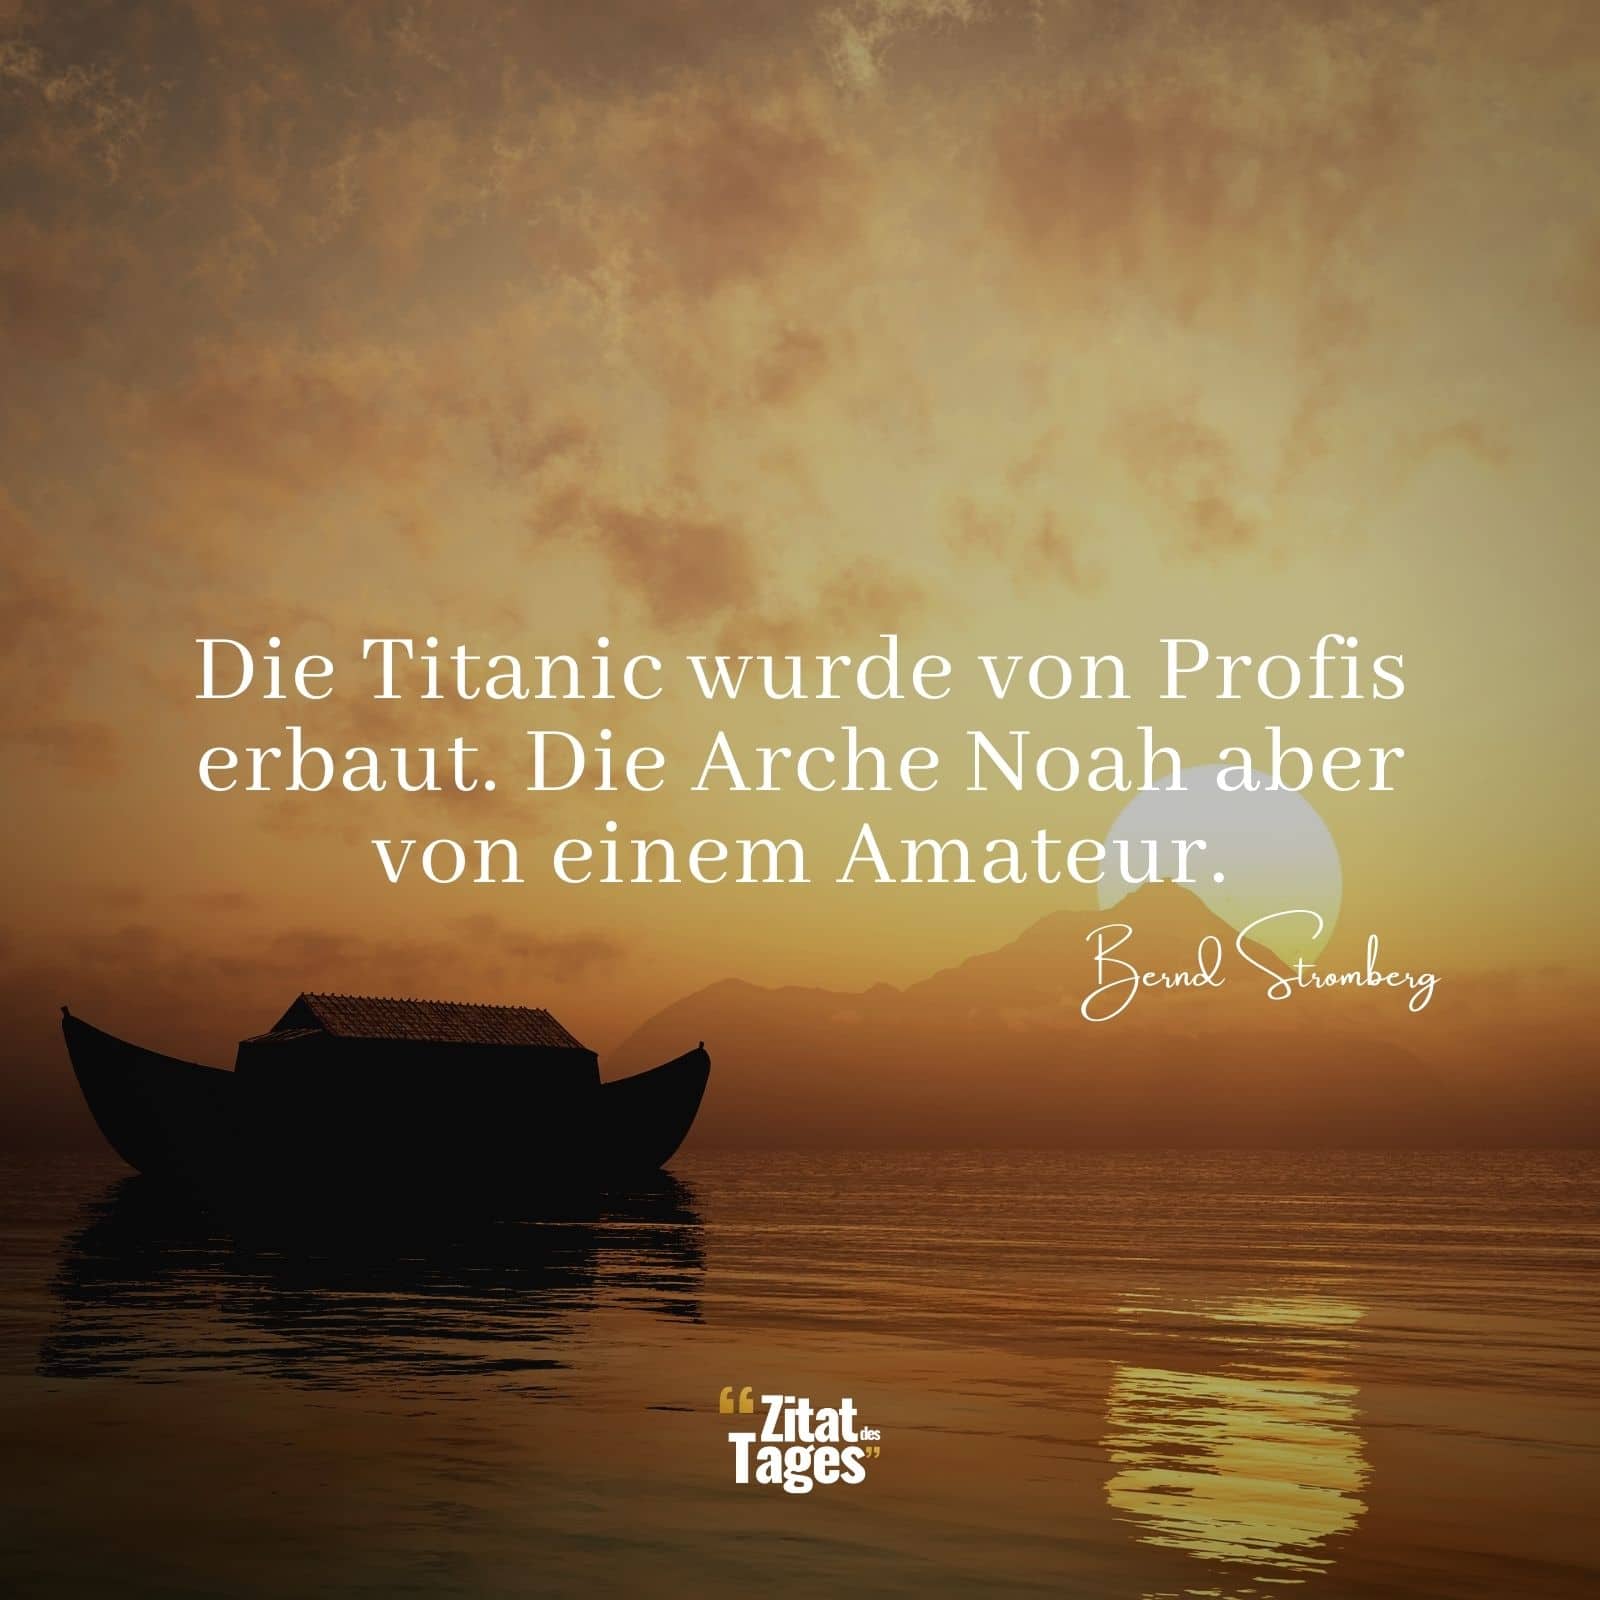 Die Titanic wurde von Profis erbaut. Die Arche Noah aber von einem Amateur. - Bernd Stromberg